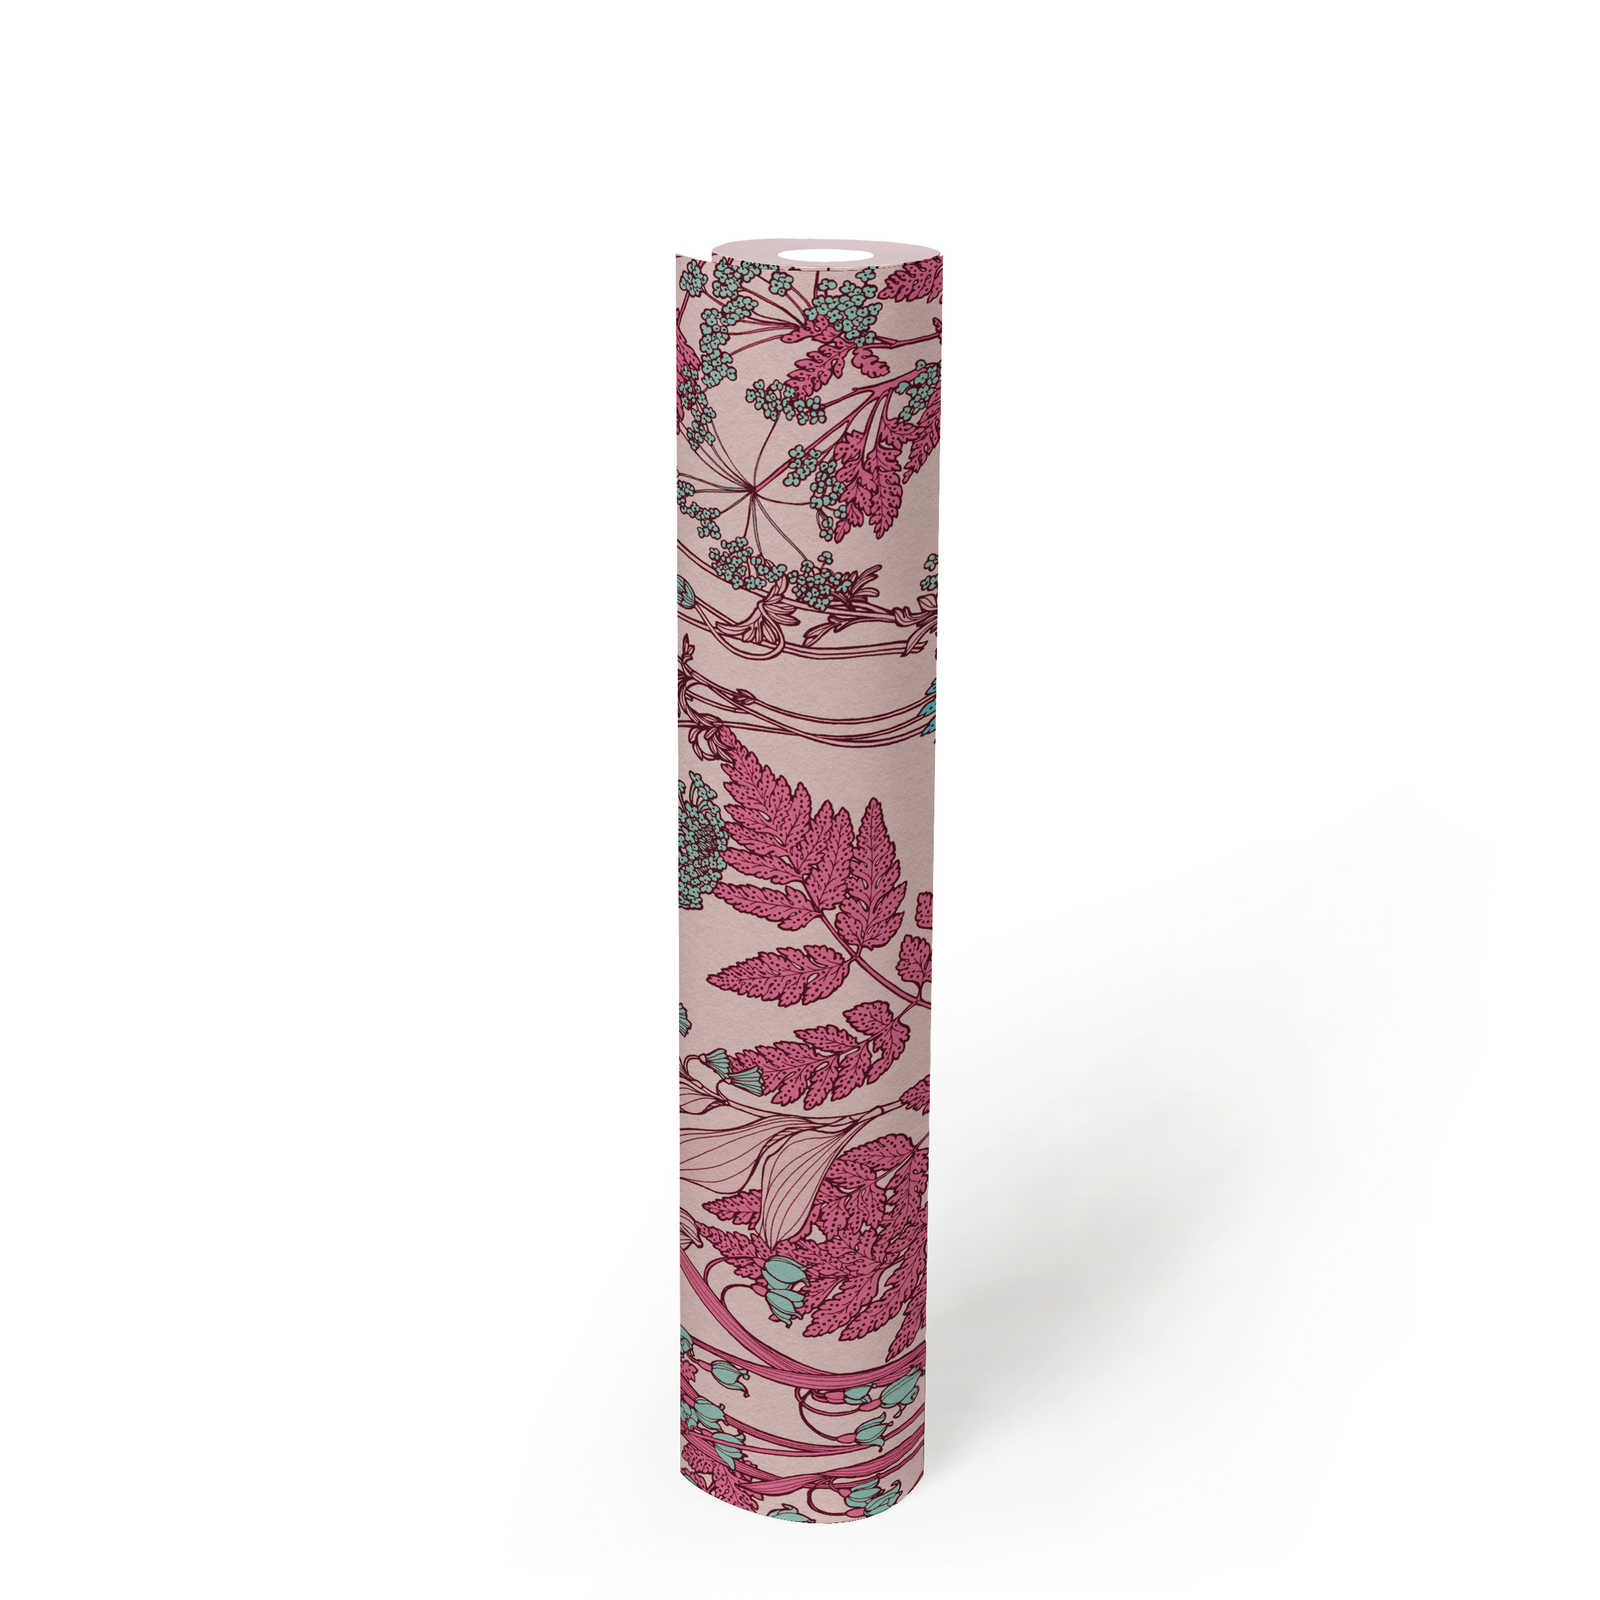             Papier peint fleuri rose avec design floral style botanique - rose, rouge, bleu
        